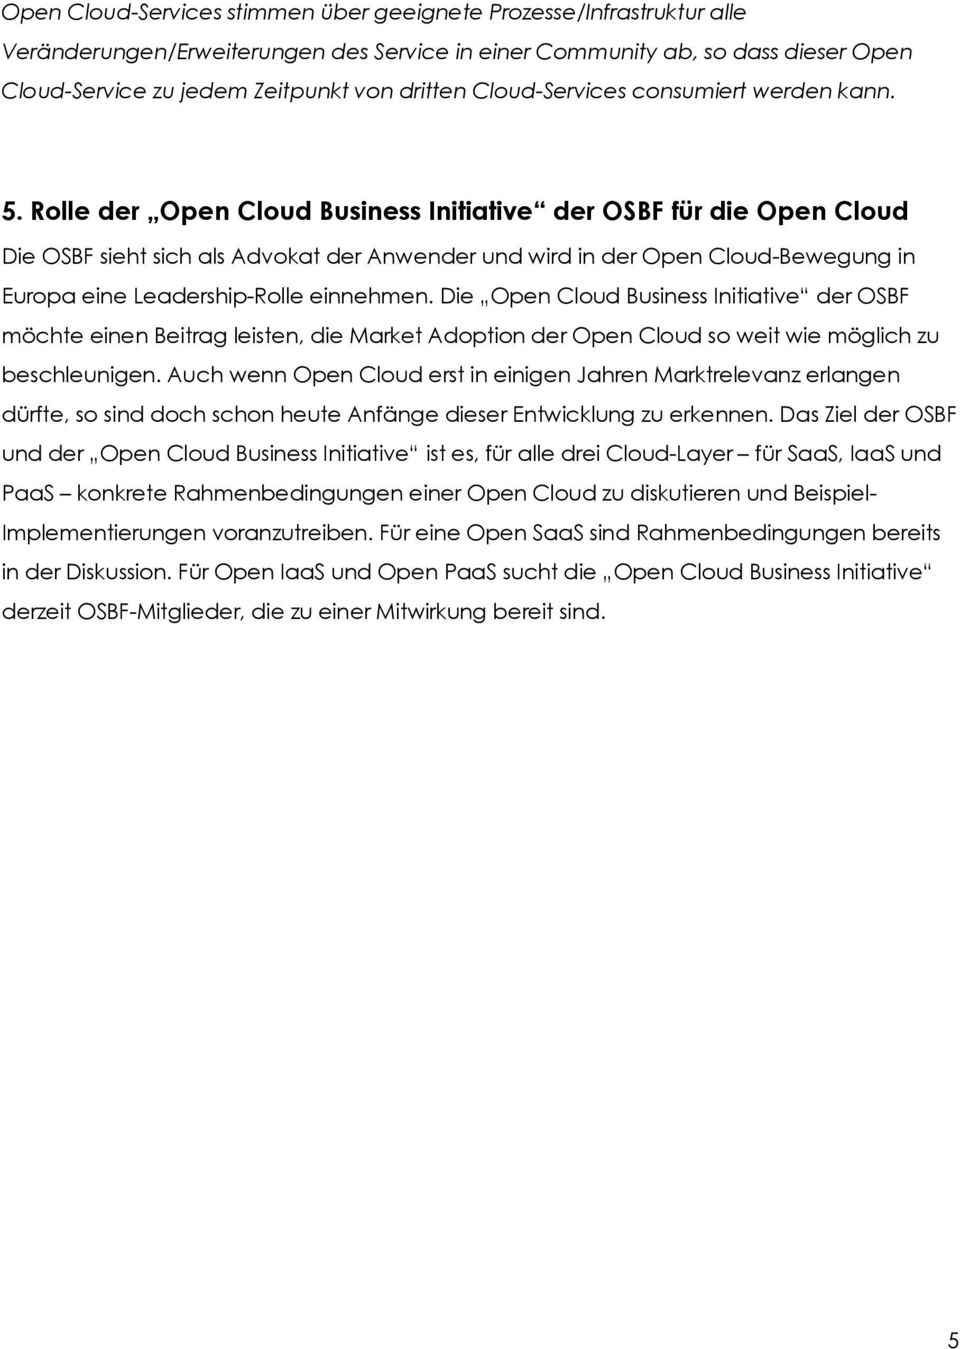 Rolle der Open Cloud Business Initiative der OSBF für die Open Cloud Die OSBF sieht sich als Advokat der Anwender und wird in der Open Cloud-Bewegung in Europa eine Leadership-Rolle einnehmen.